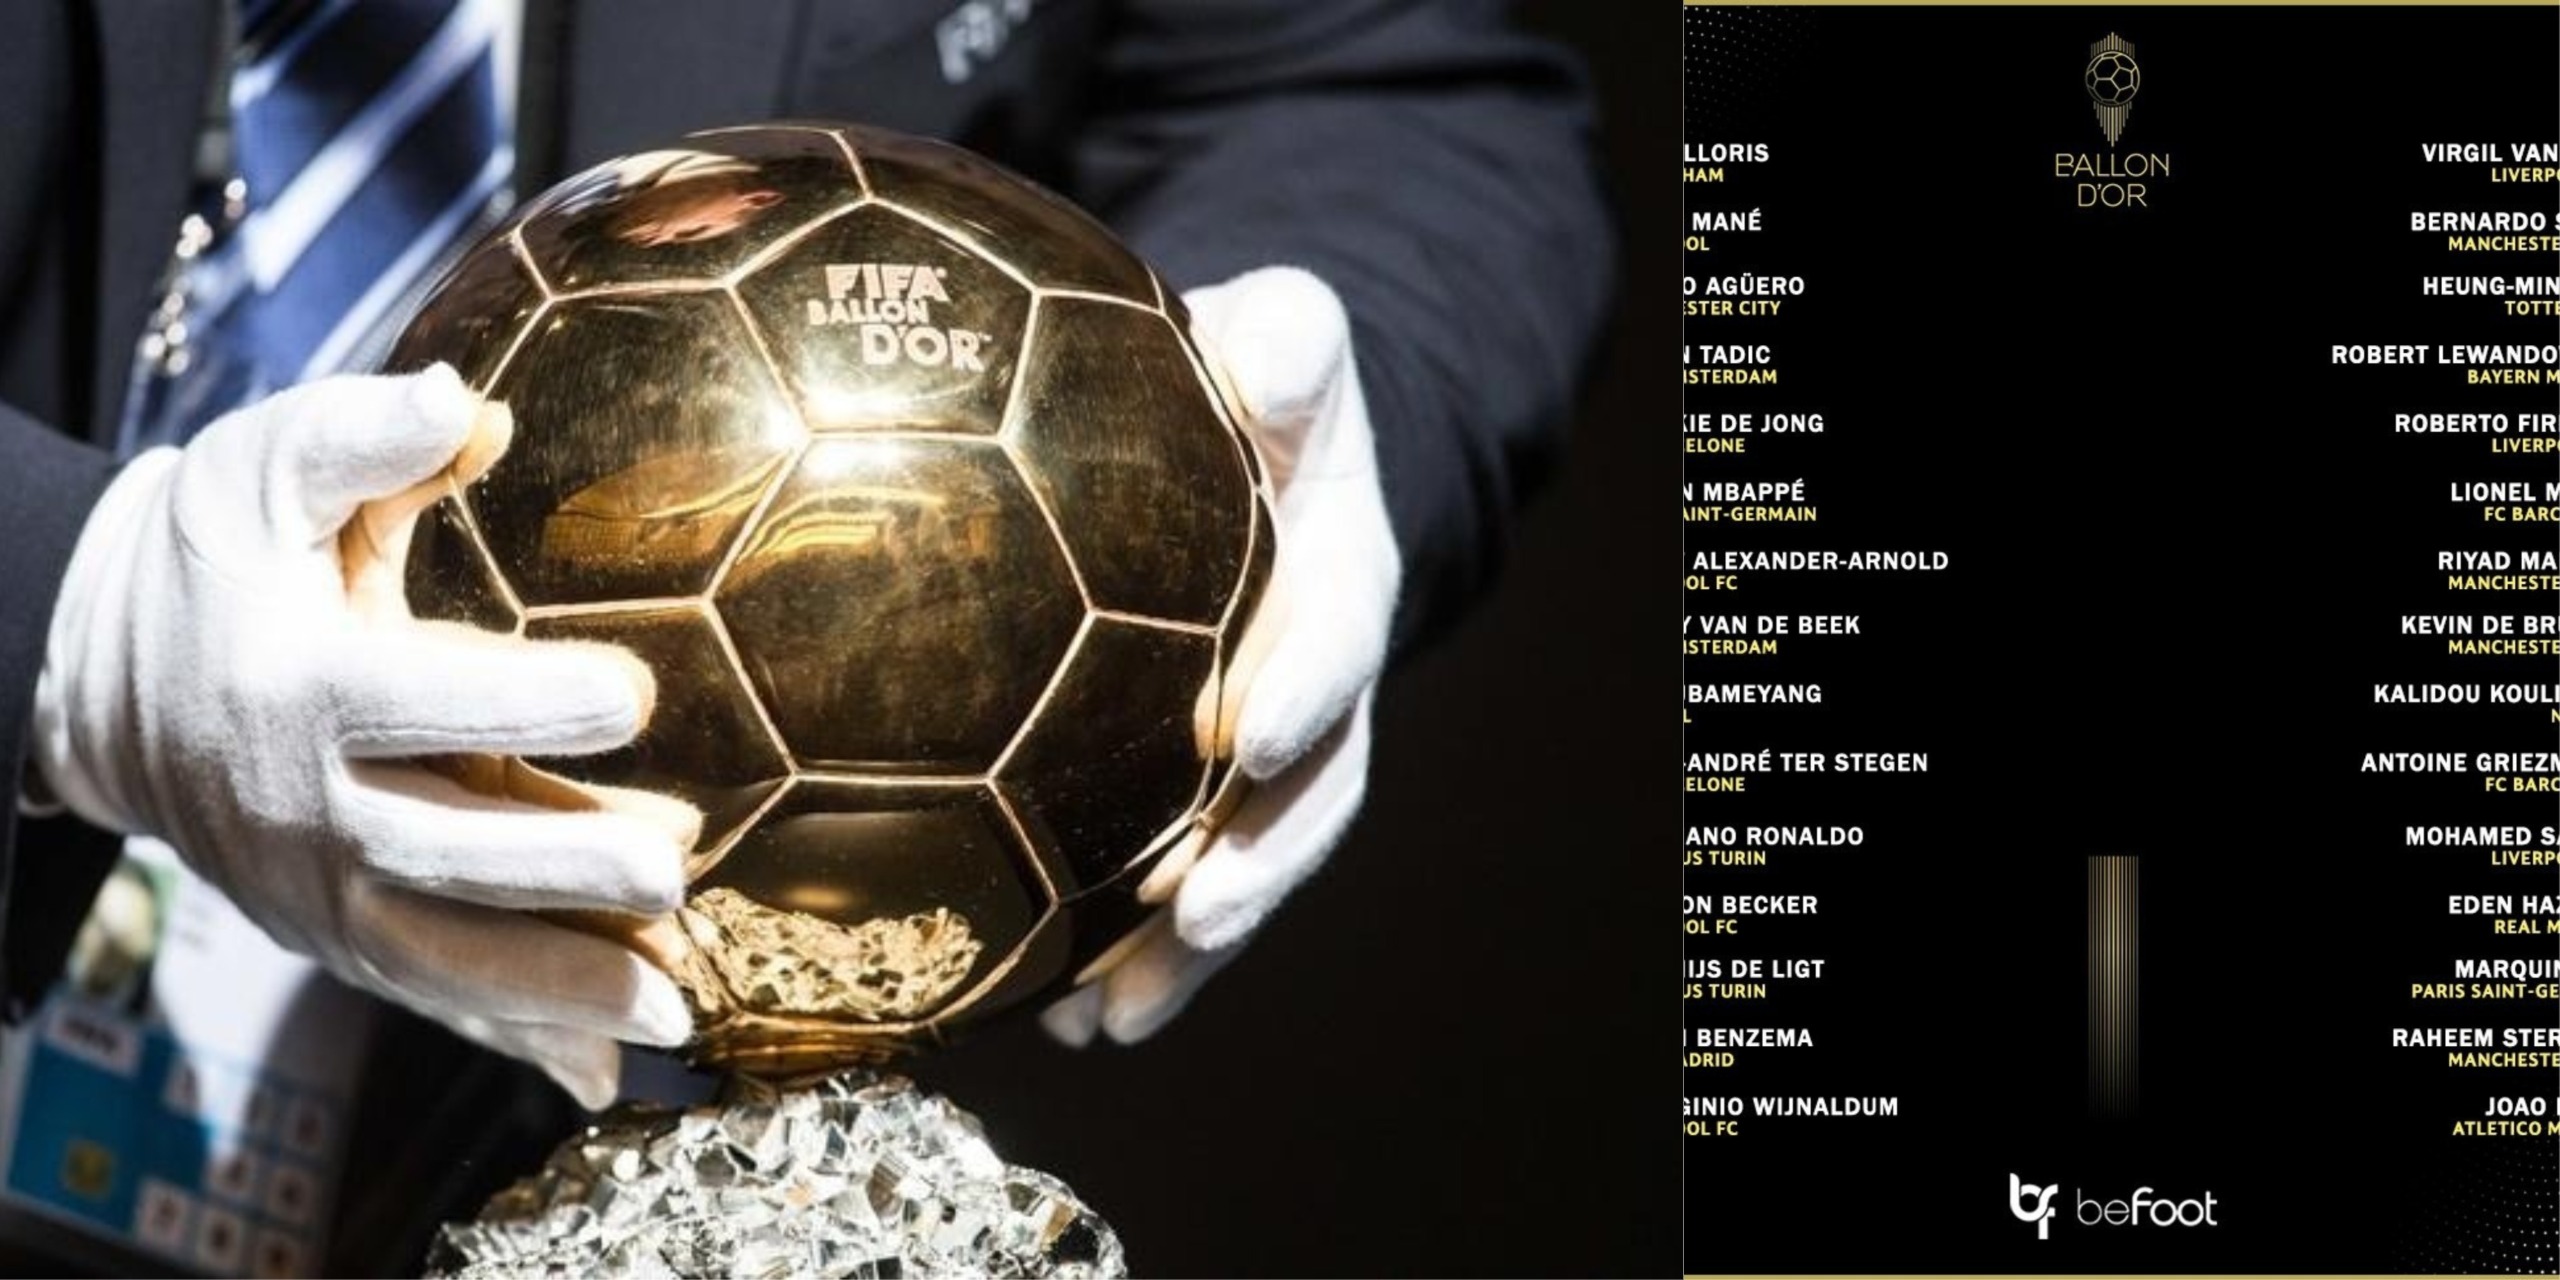 L’un des 30 nominés pour le Ballon d’or 2019 fait polémique en Angleterre (photos)